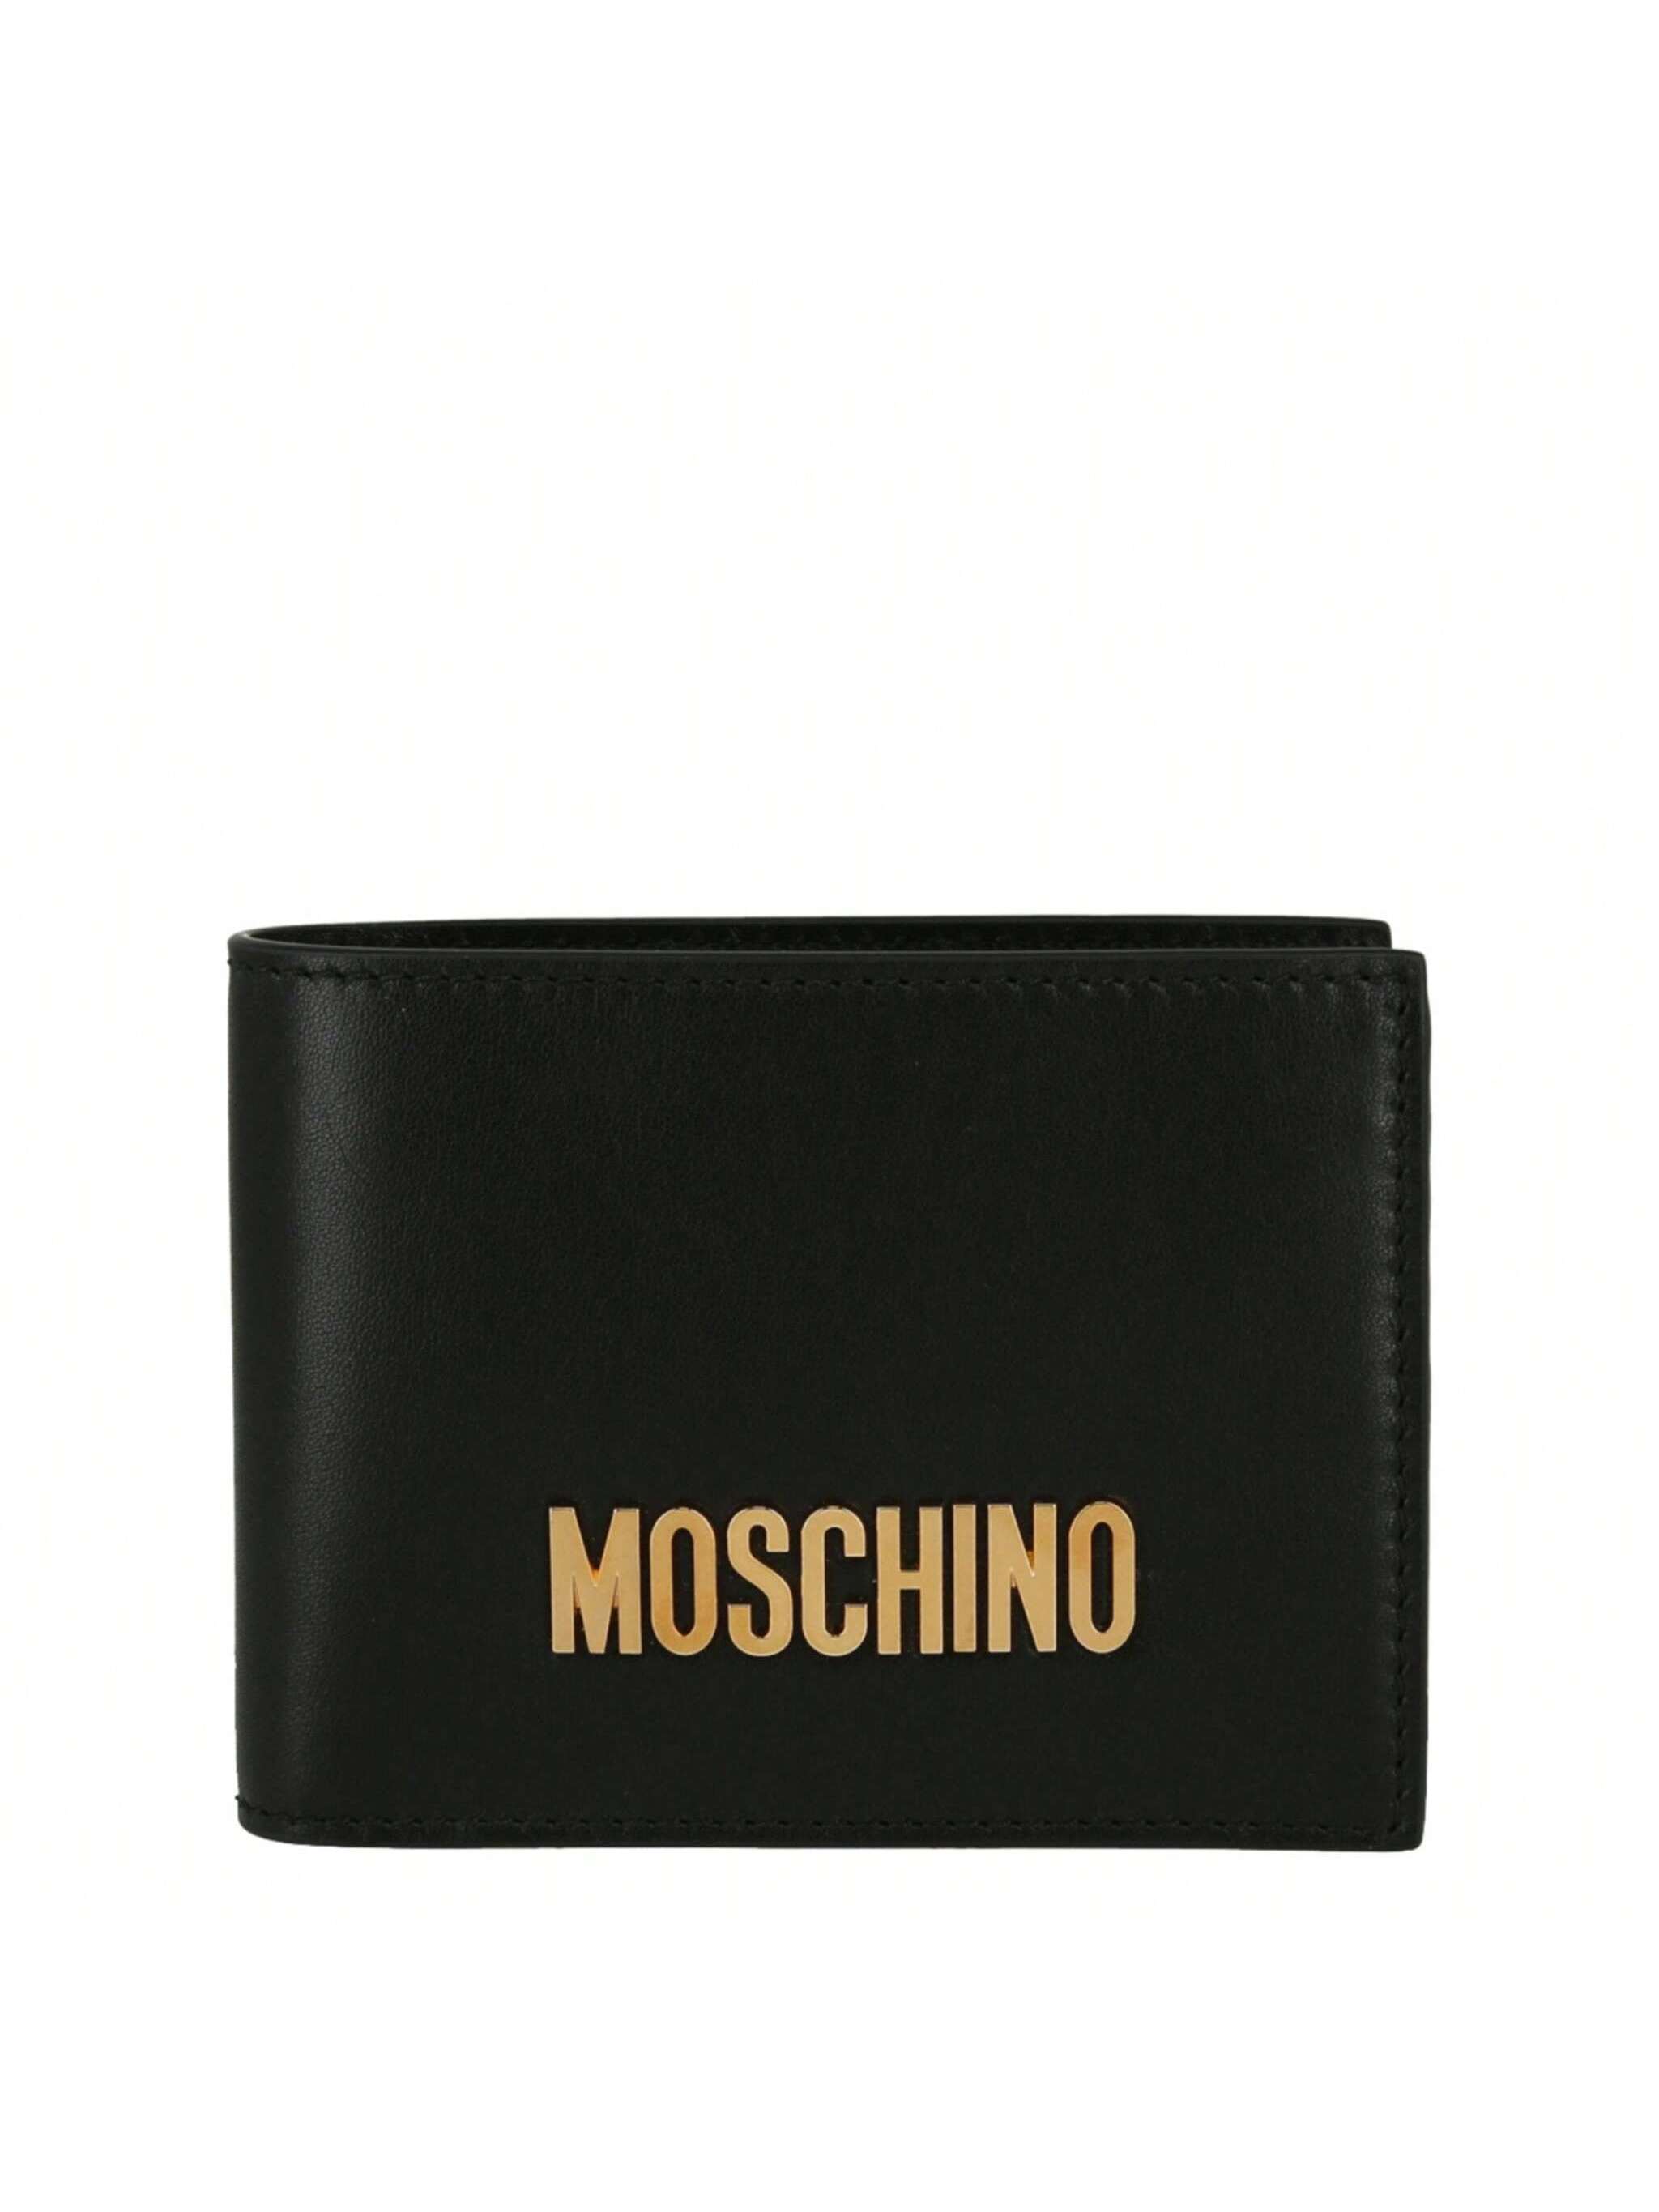 Кожаный кошелек двойного сложения MOSCHINO с логотипом Hardware, черный